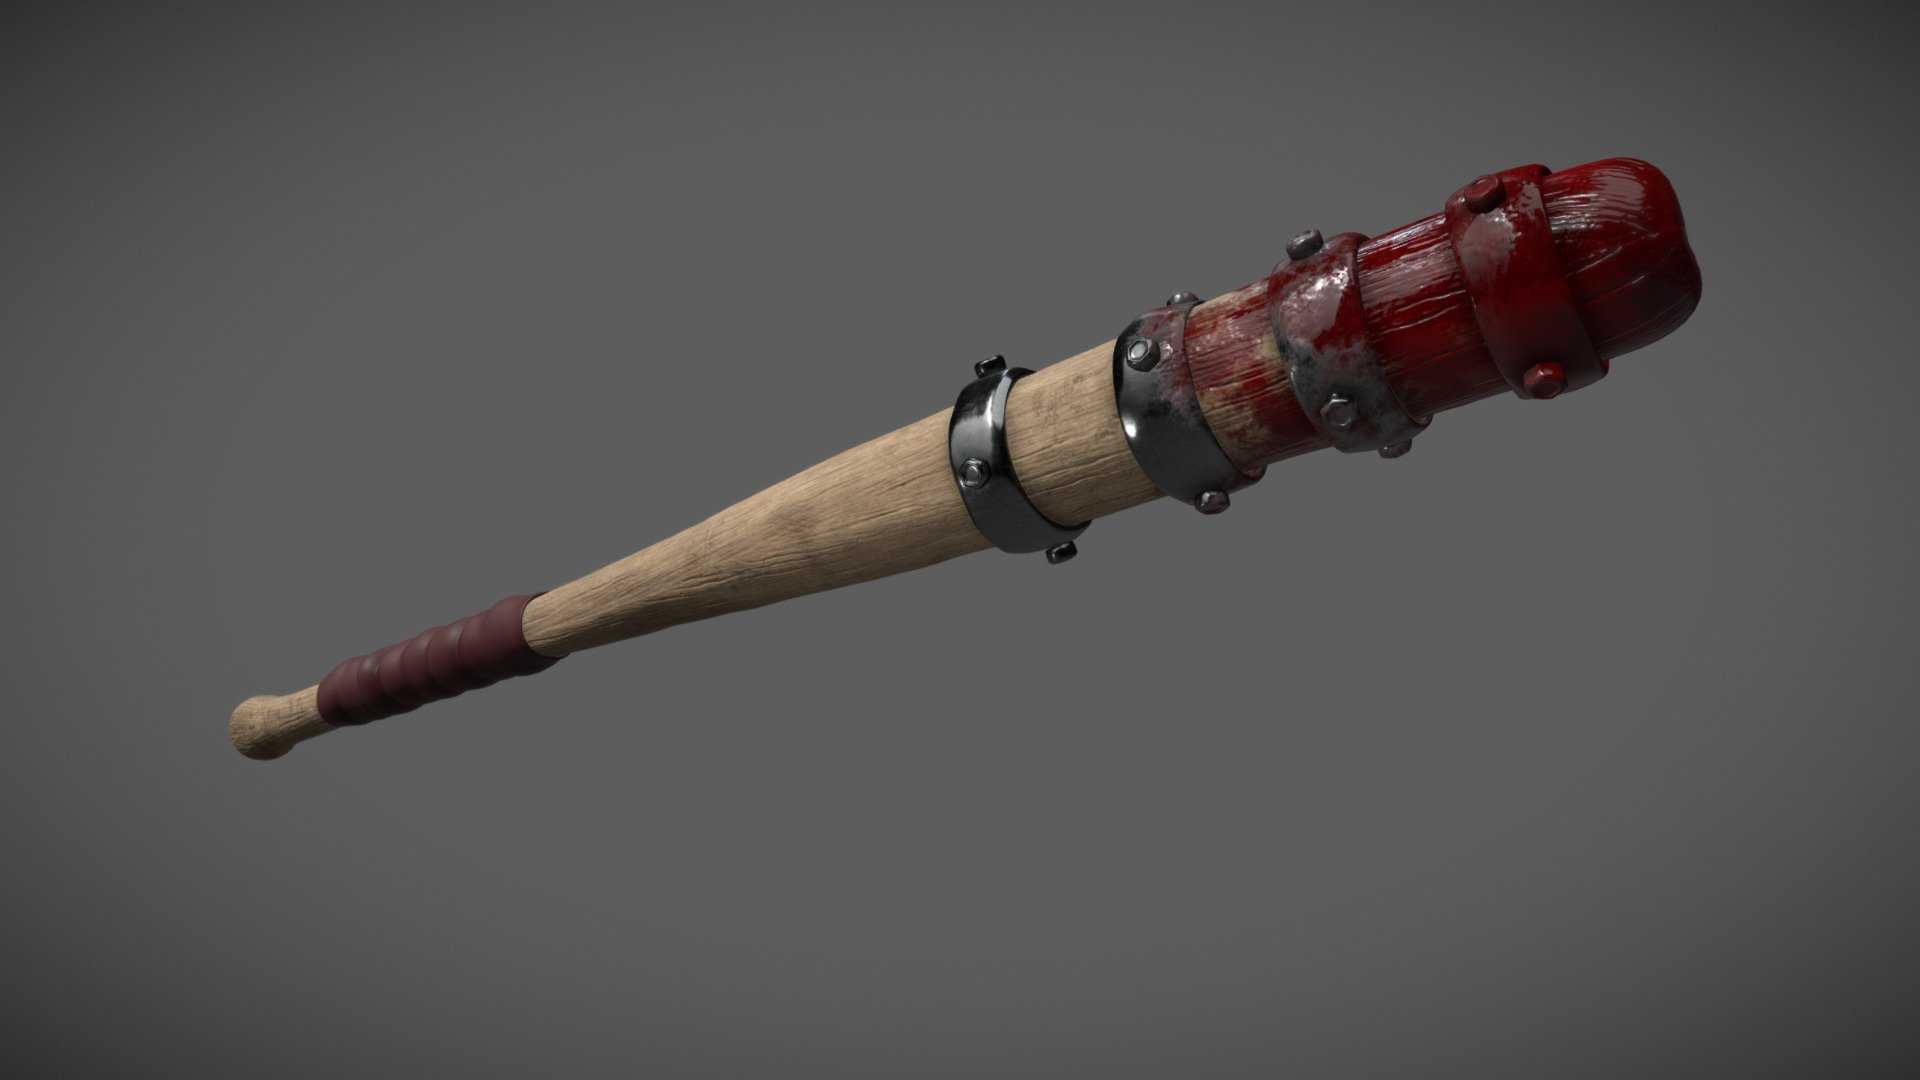 A blood-splatterd bat, made in substance - Blood bat - 3D model by Léon Maurice (@Silveraze) 3d model